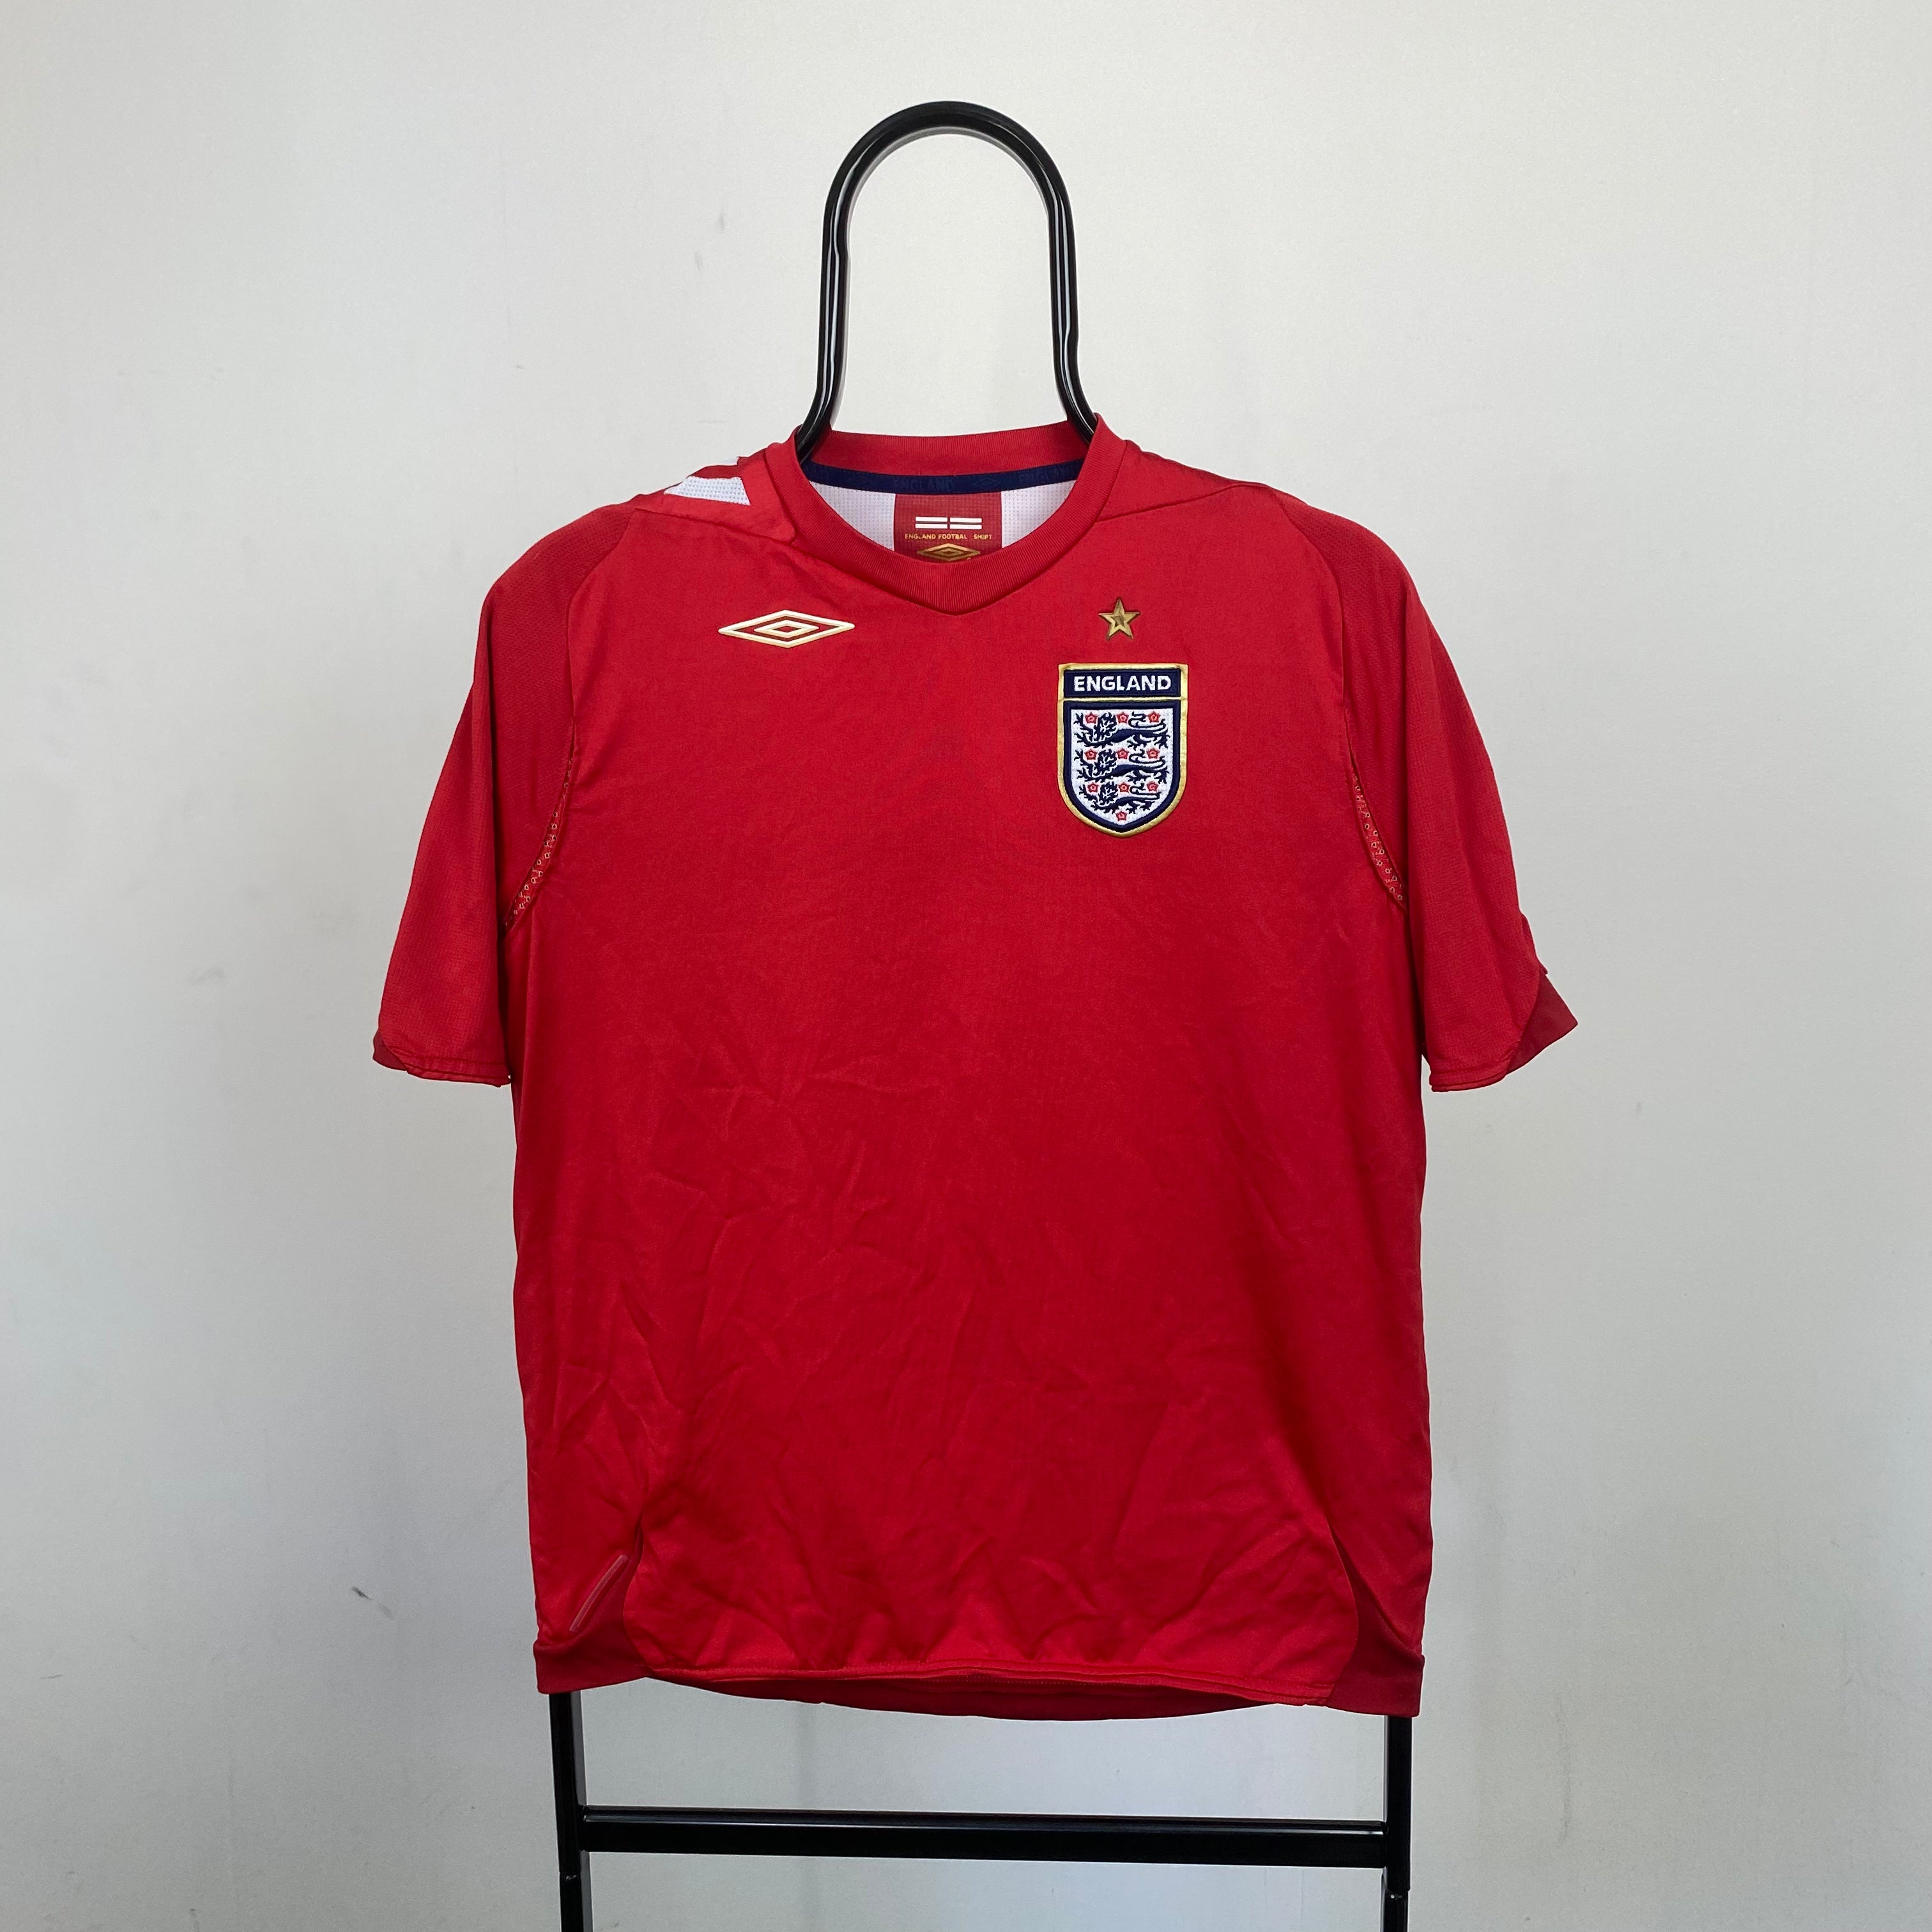 Retro Umbro England Football Shirt T-Shirt Red Small